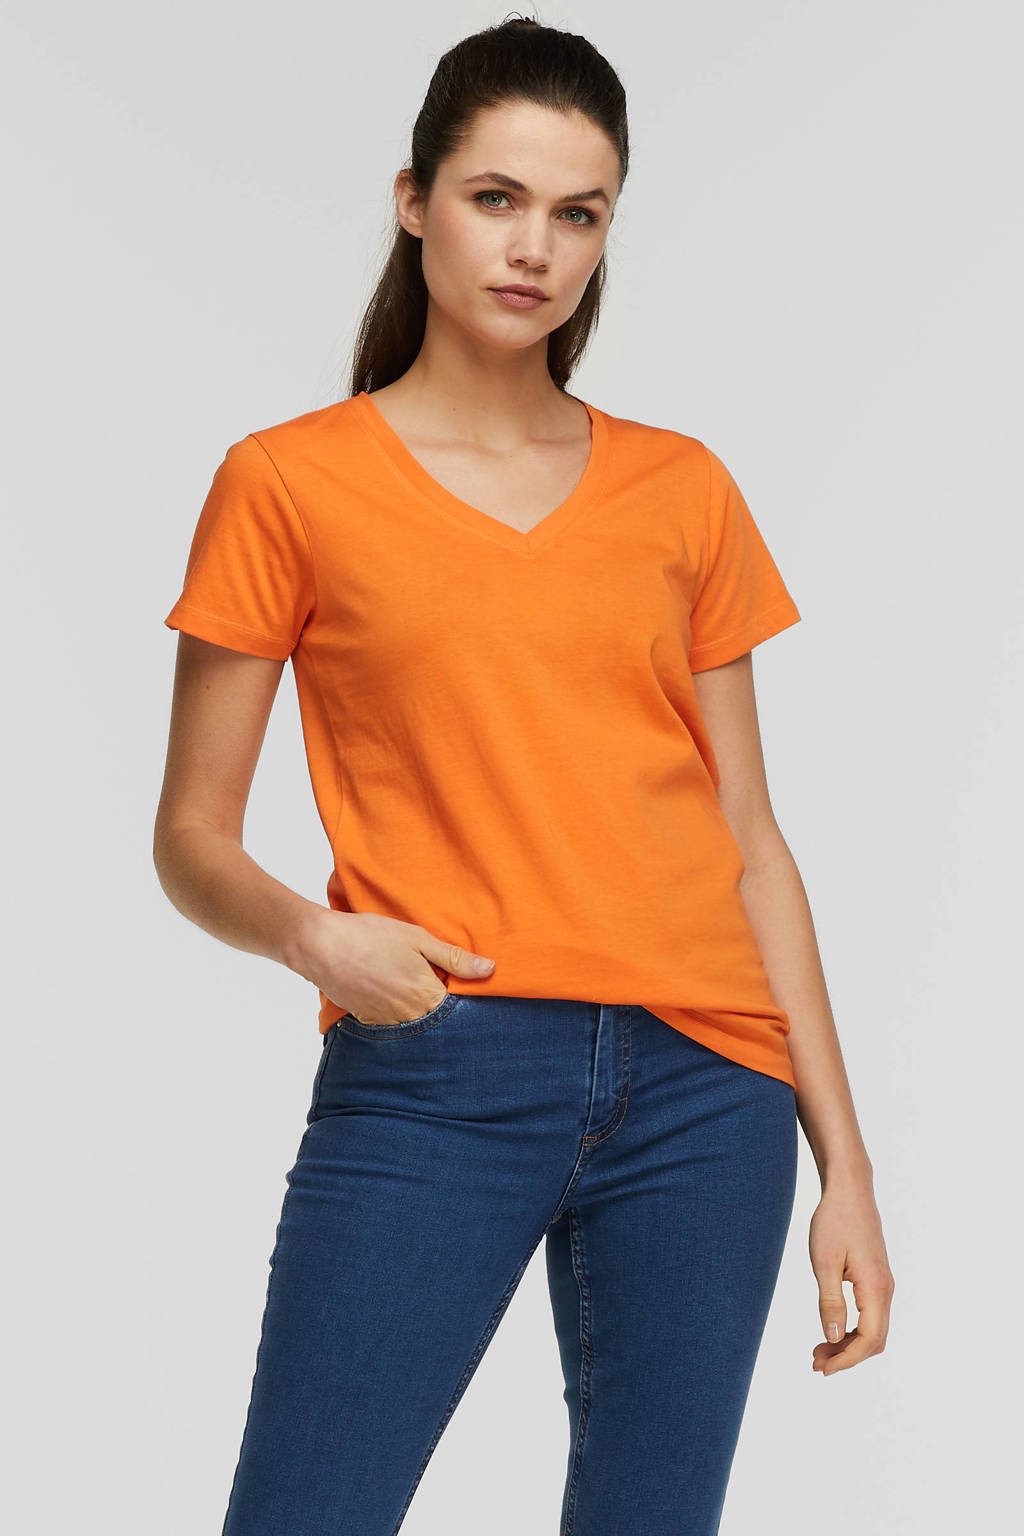 begrijpen enthousiast Nationaal volkslied anytime T-shirt met V-hals oranje | wehkamp